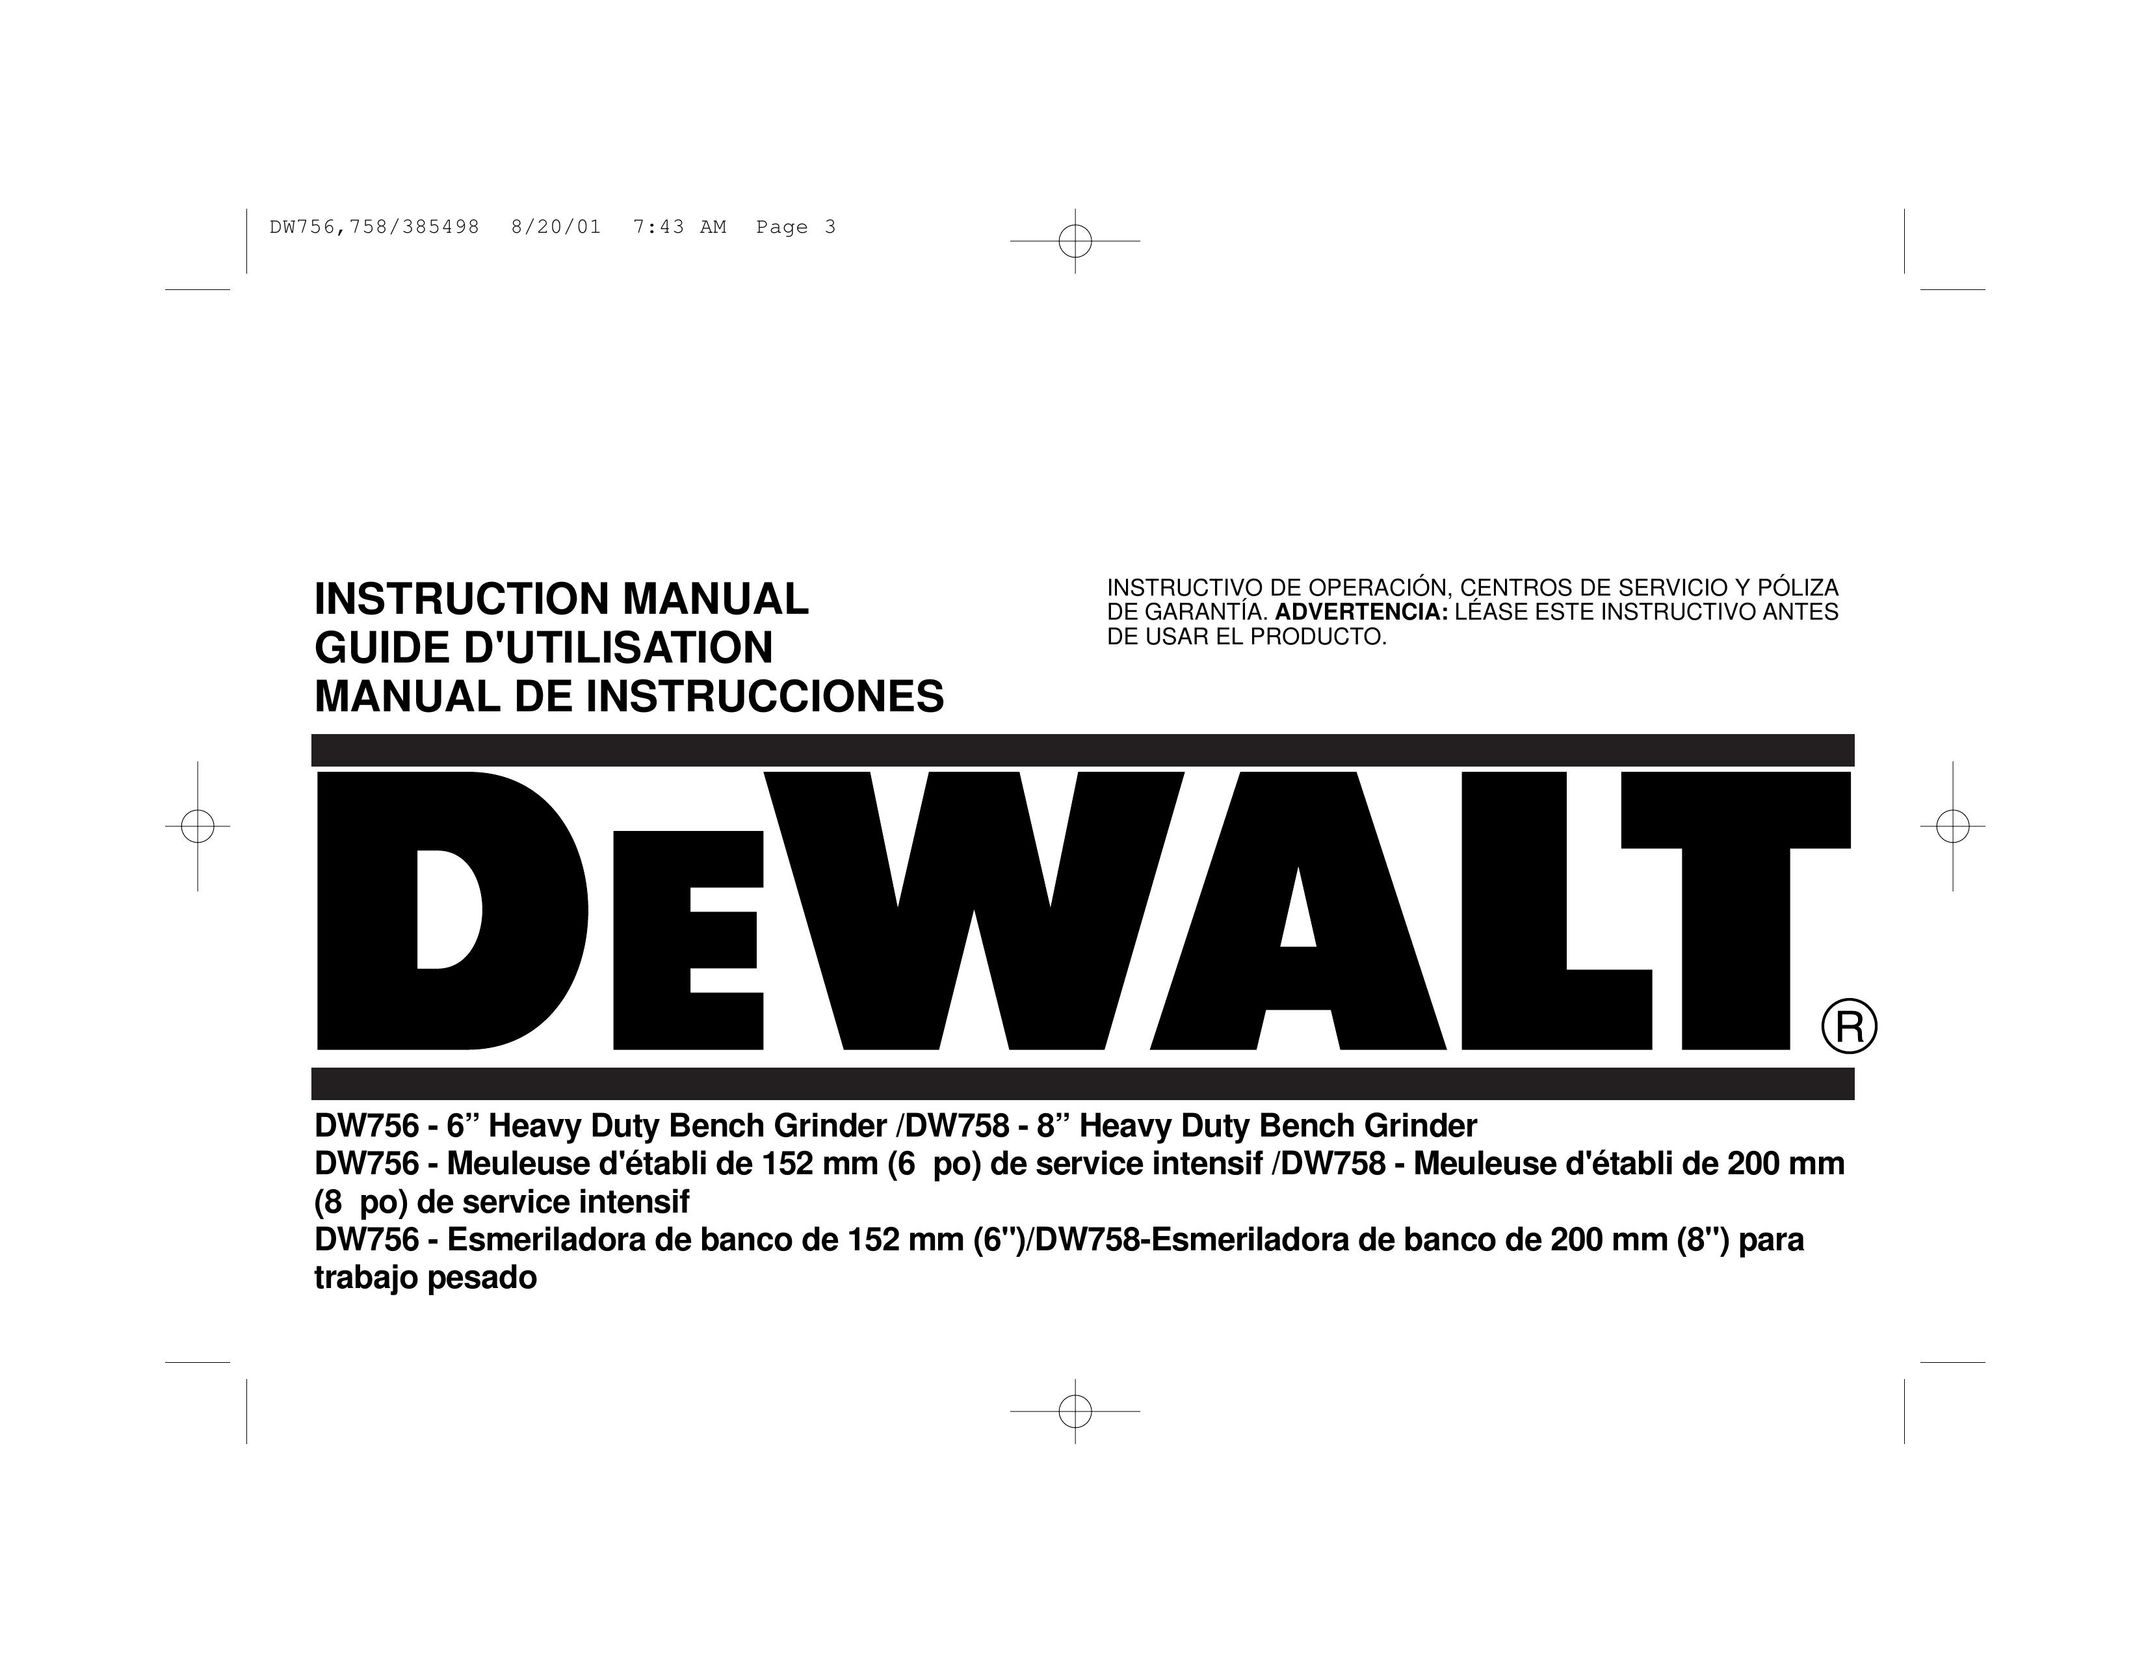 DeWalt DW758 Grinder User Manual